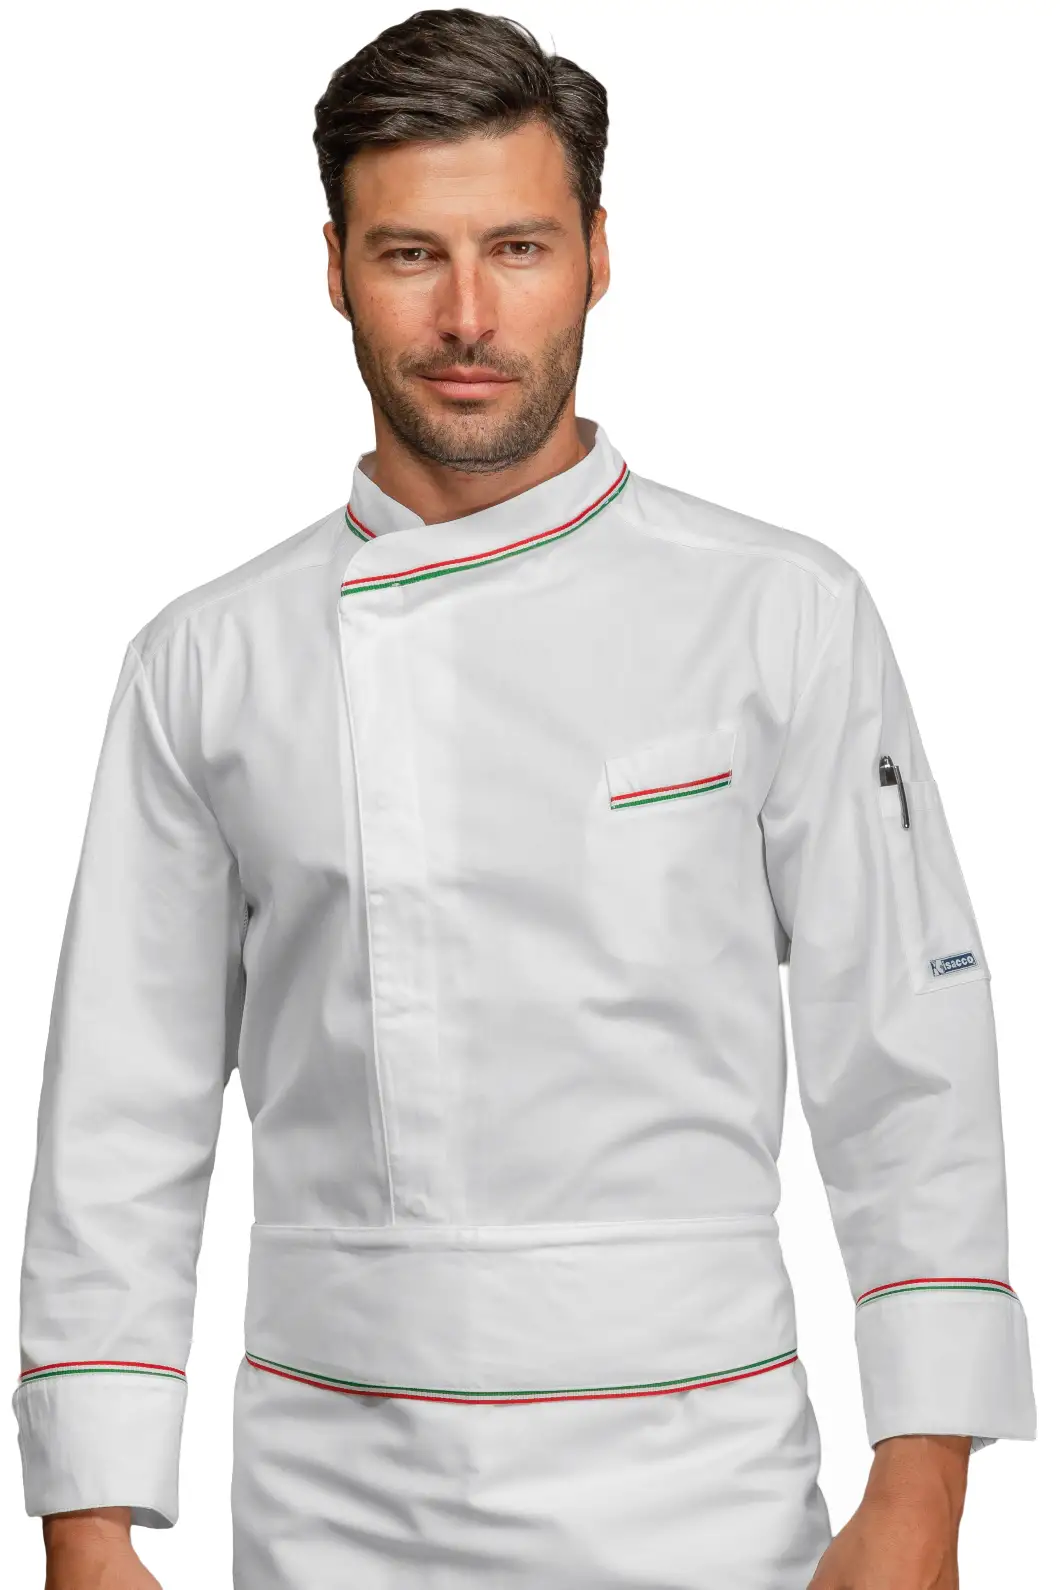 Giacca Uomo Cuoco profili Tricolore Personalizzata